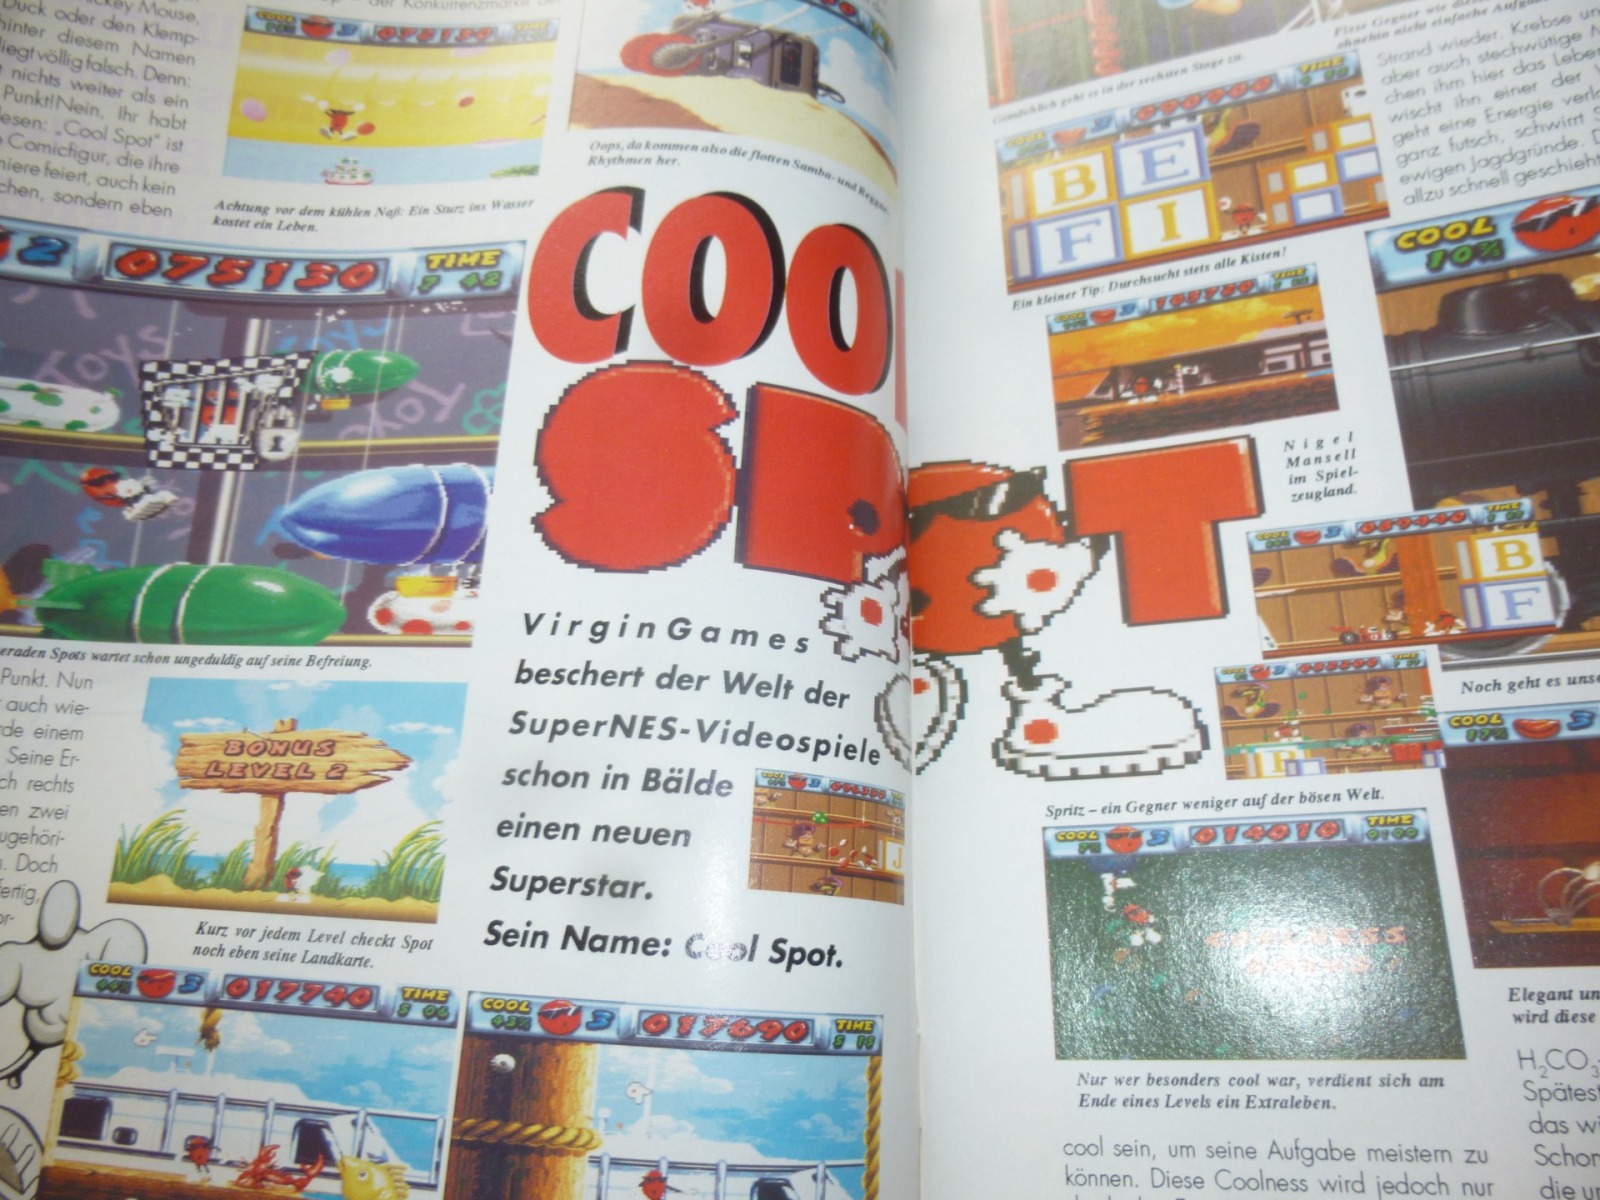 TOTAL Das unabhängige Magazin - 100% Nintendo - Ausgabe 10/93 1993 7